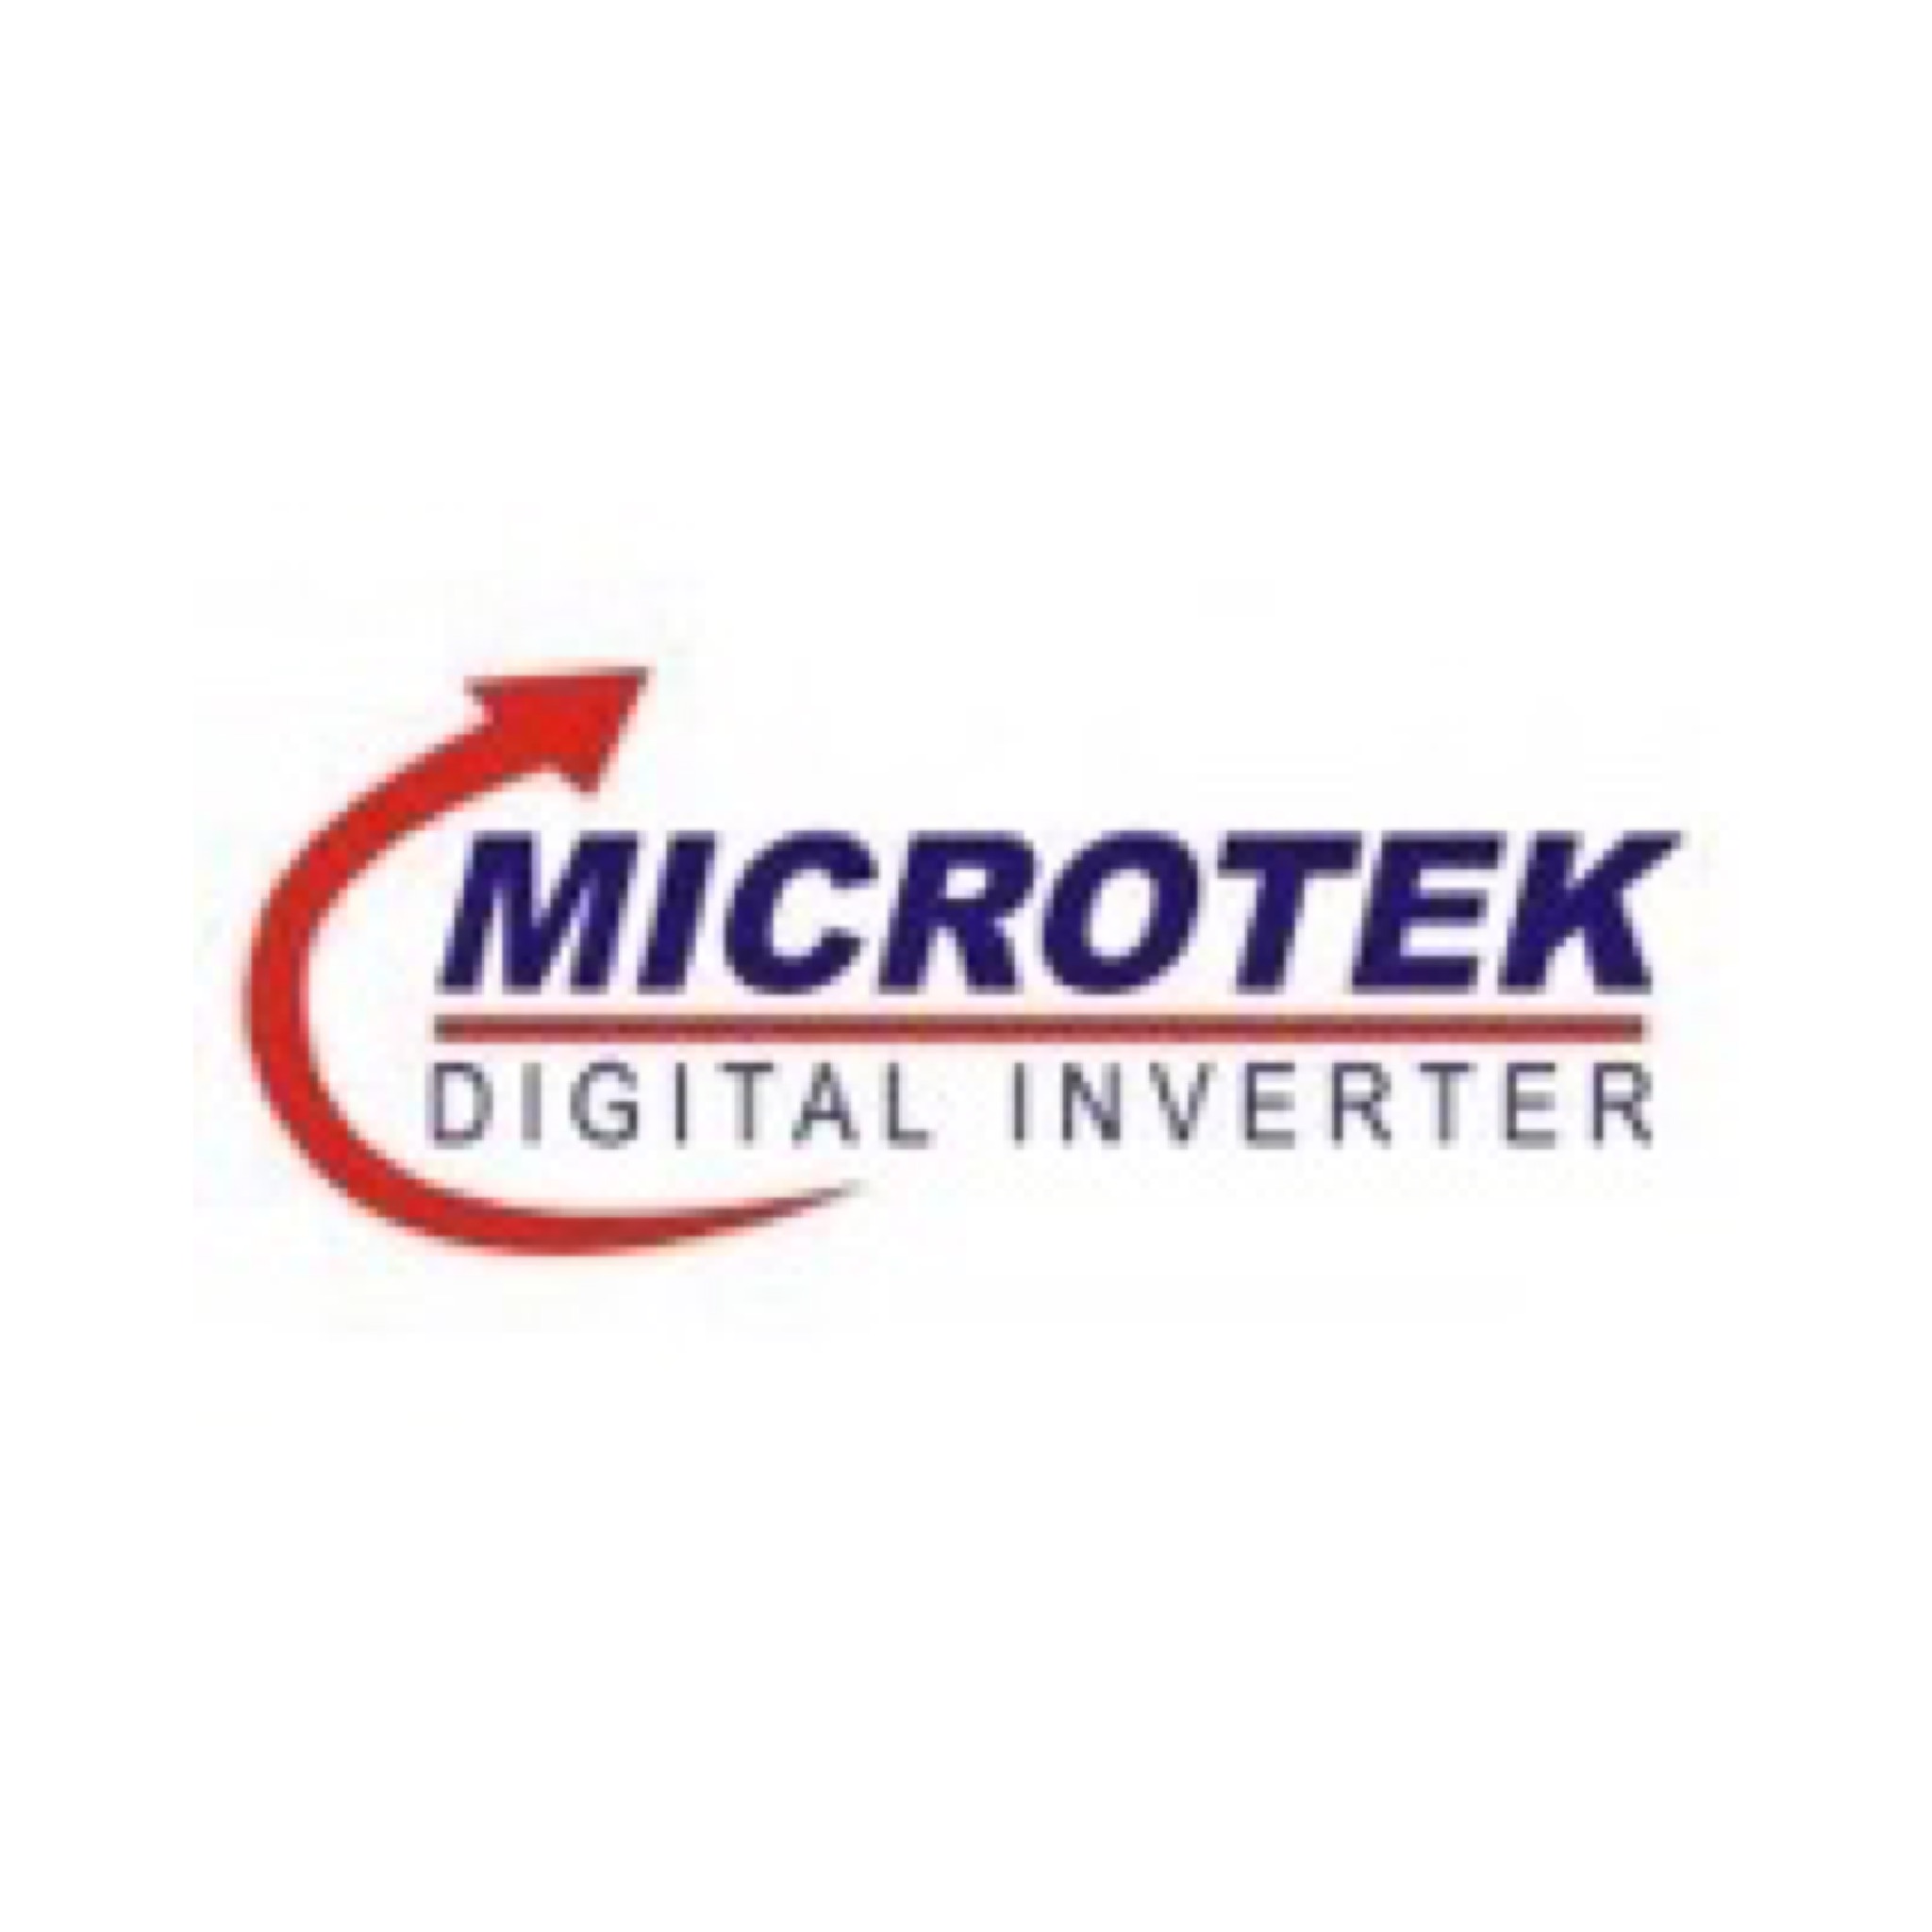 #Microtek